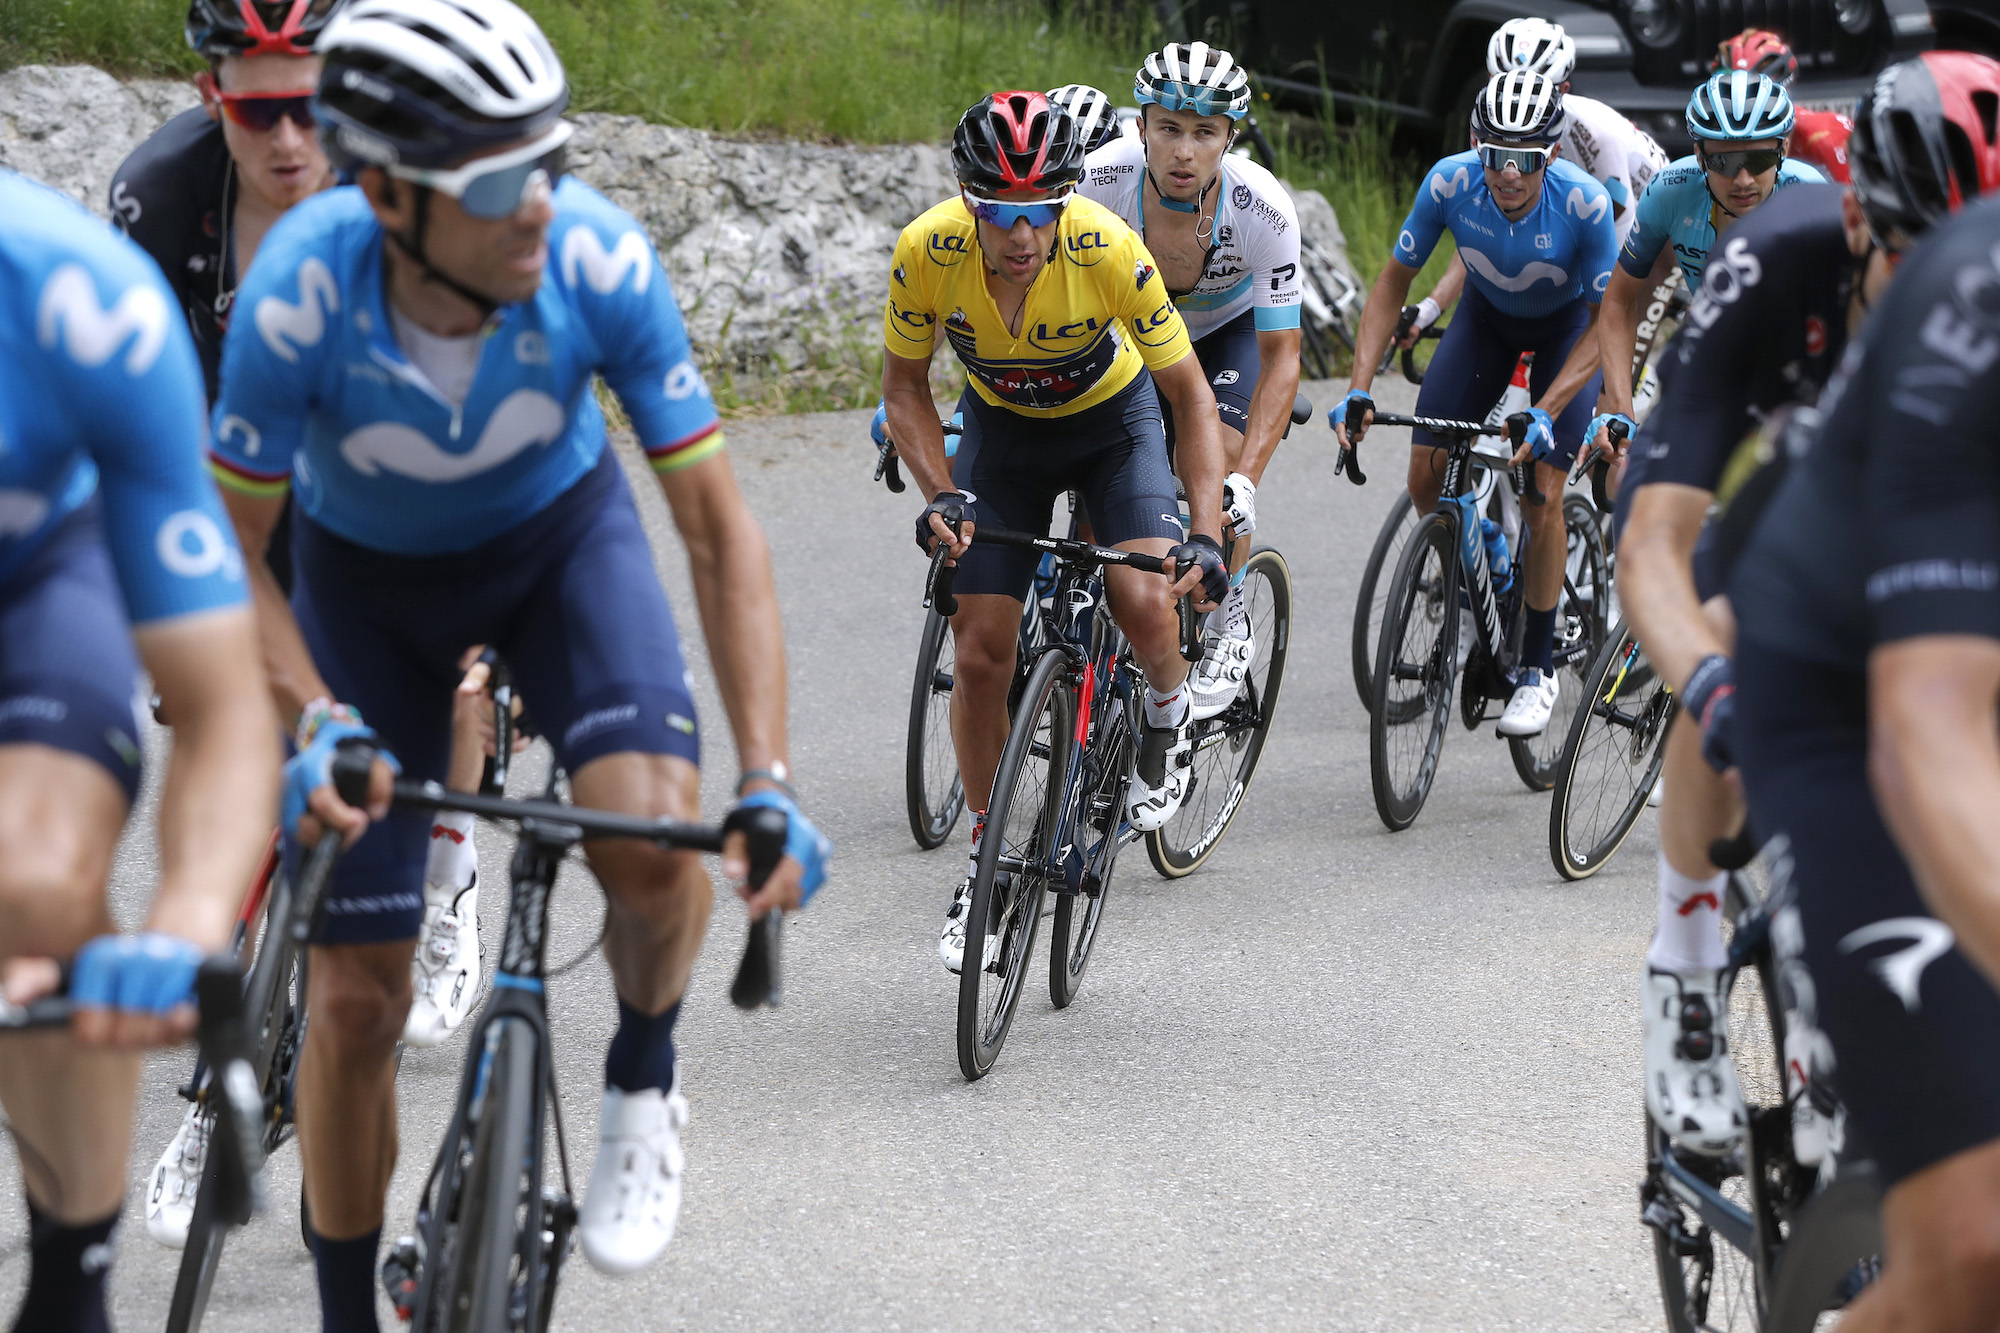 Richie Porte sella el título del Critérium du Dauphiné y Mark Padun gana la segunda etapa consecutiva